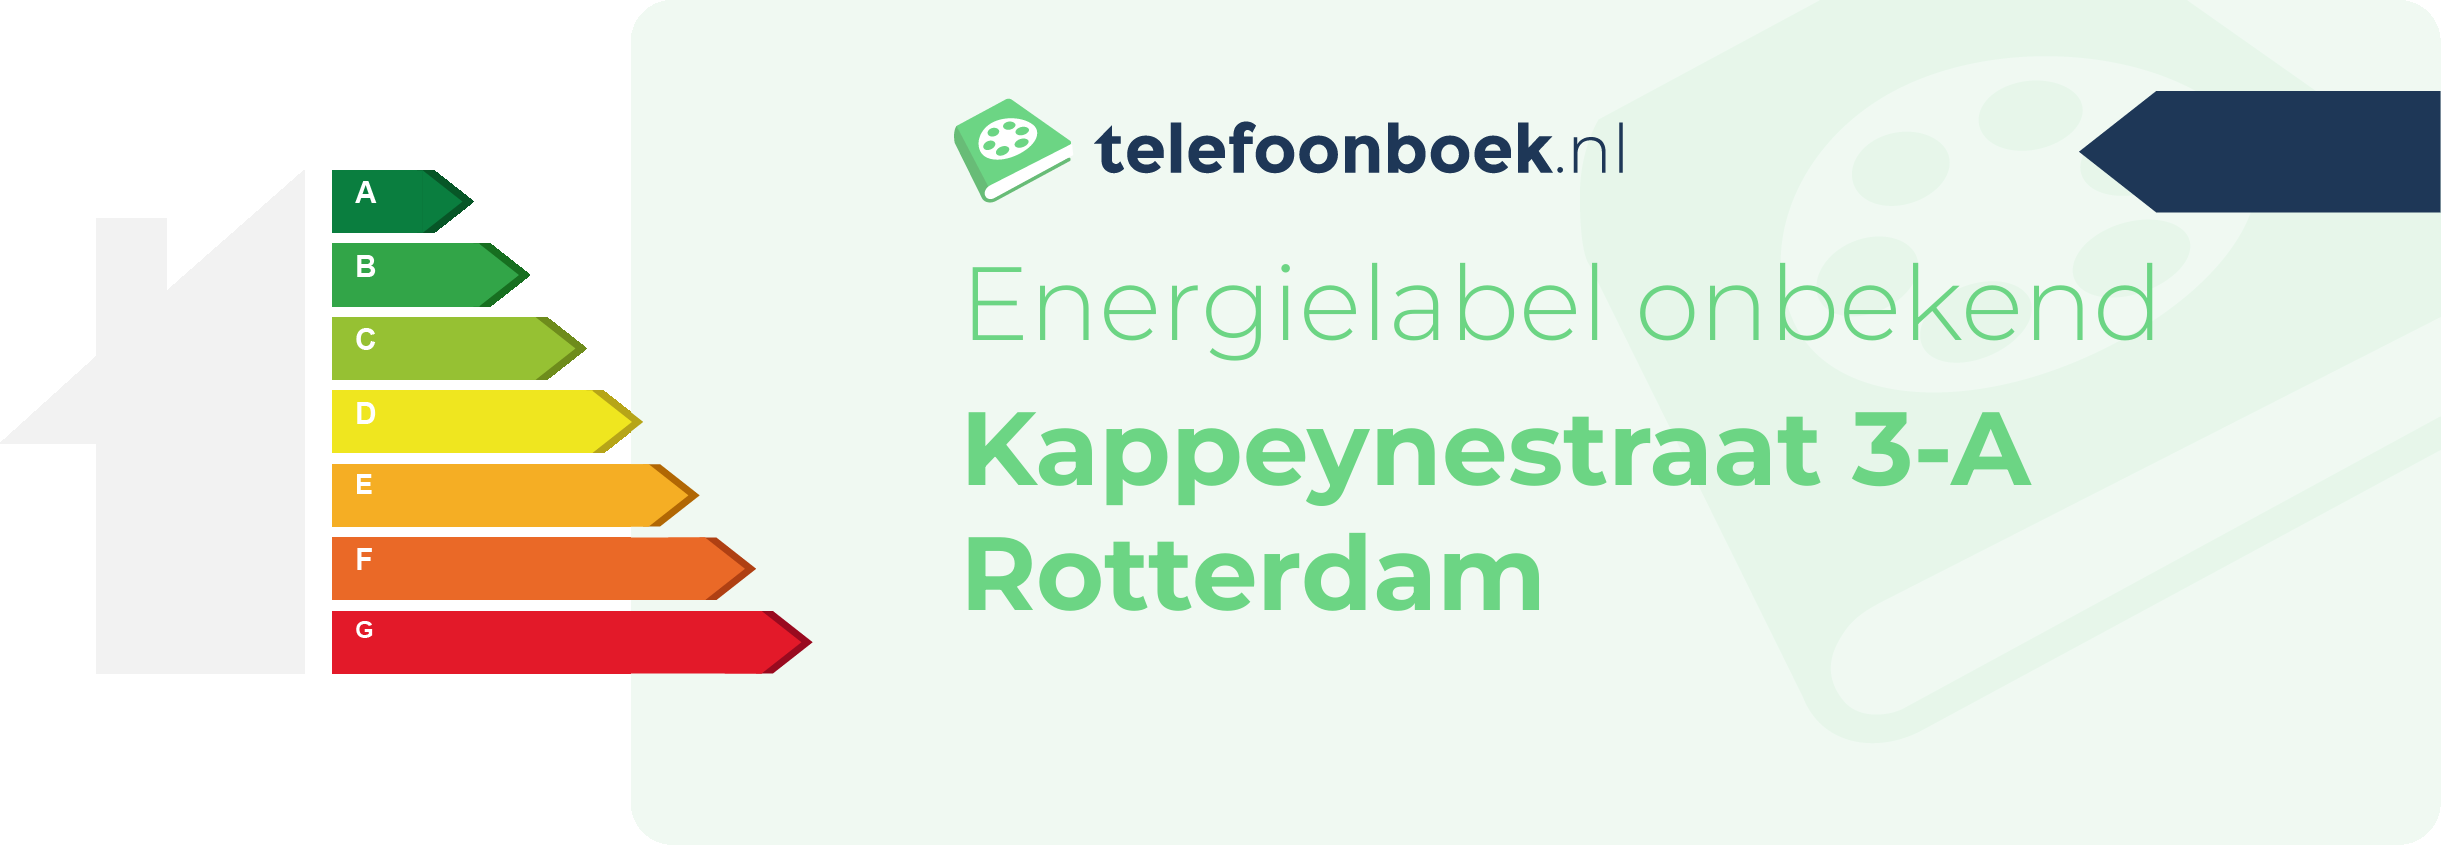 Energielabel Kappeynestraat 3-A Rotterdam